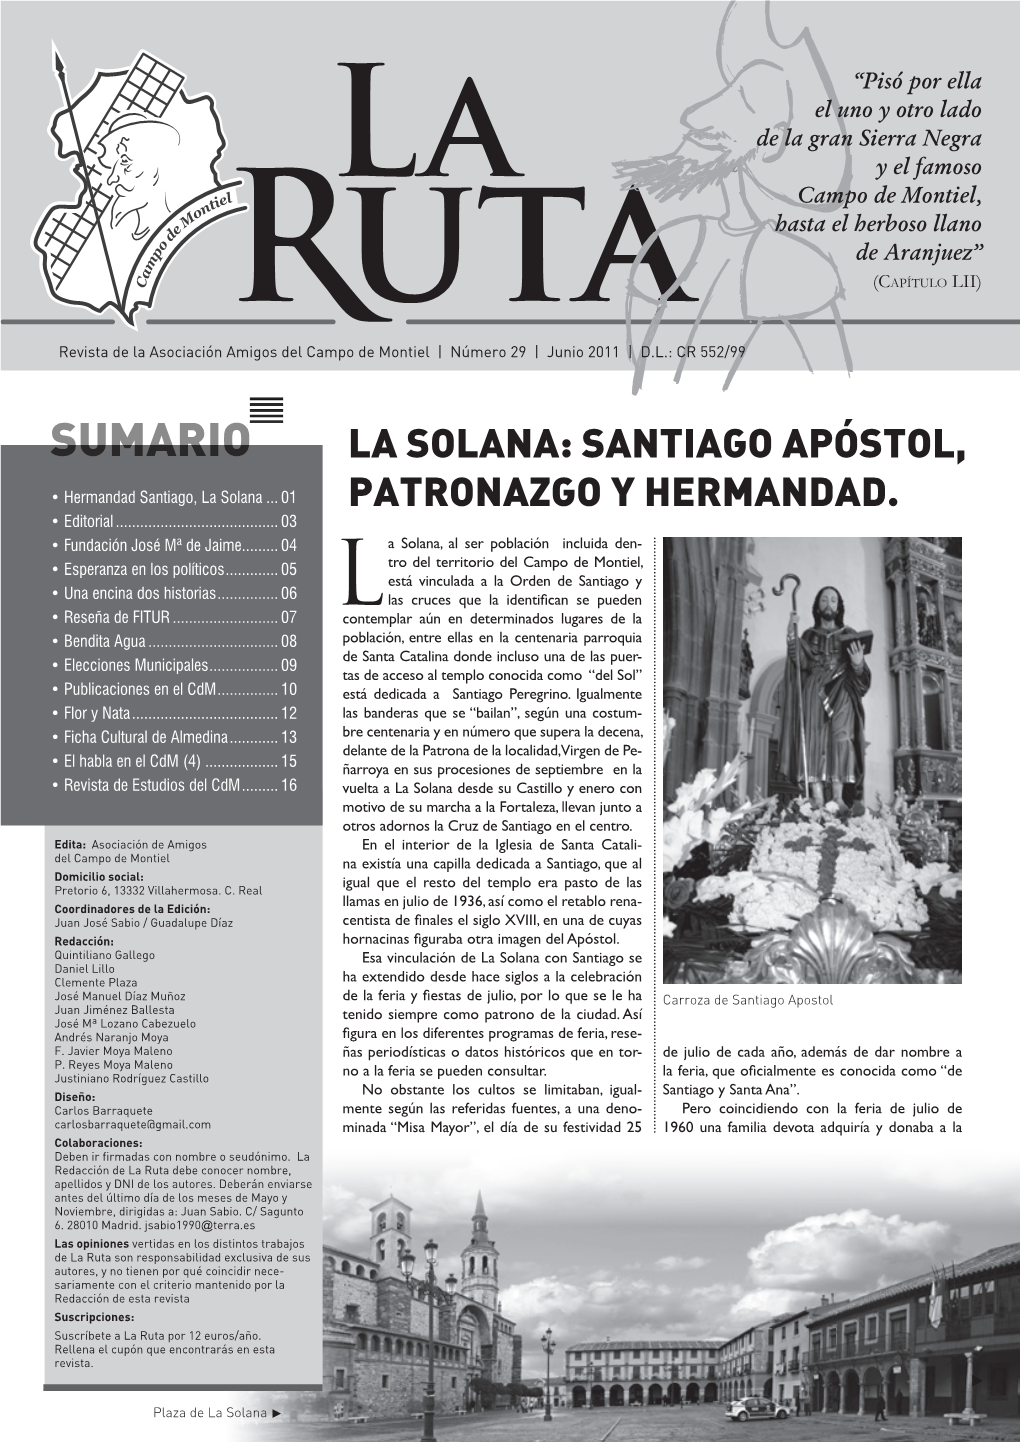 La Solana: Santiago Apóstol, Patronazgo Y Hermandad